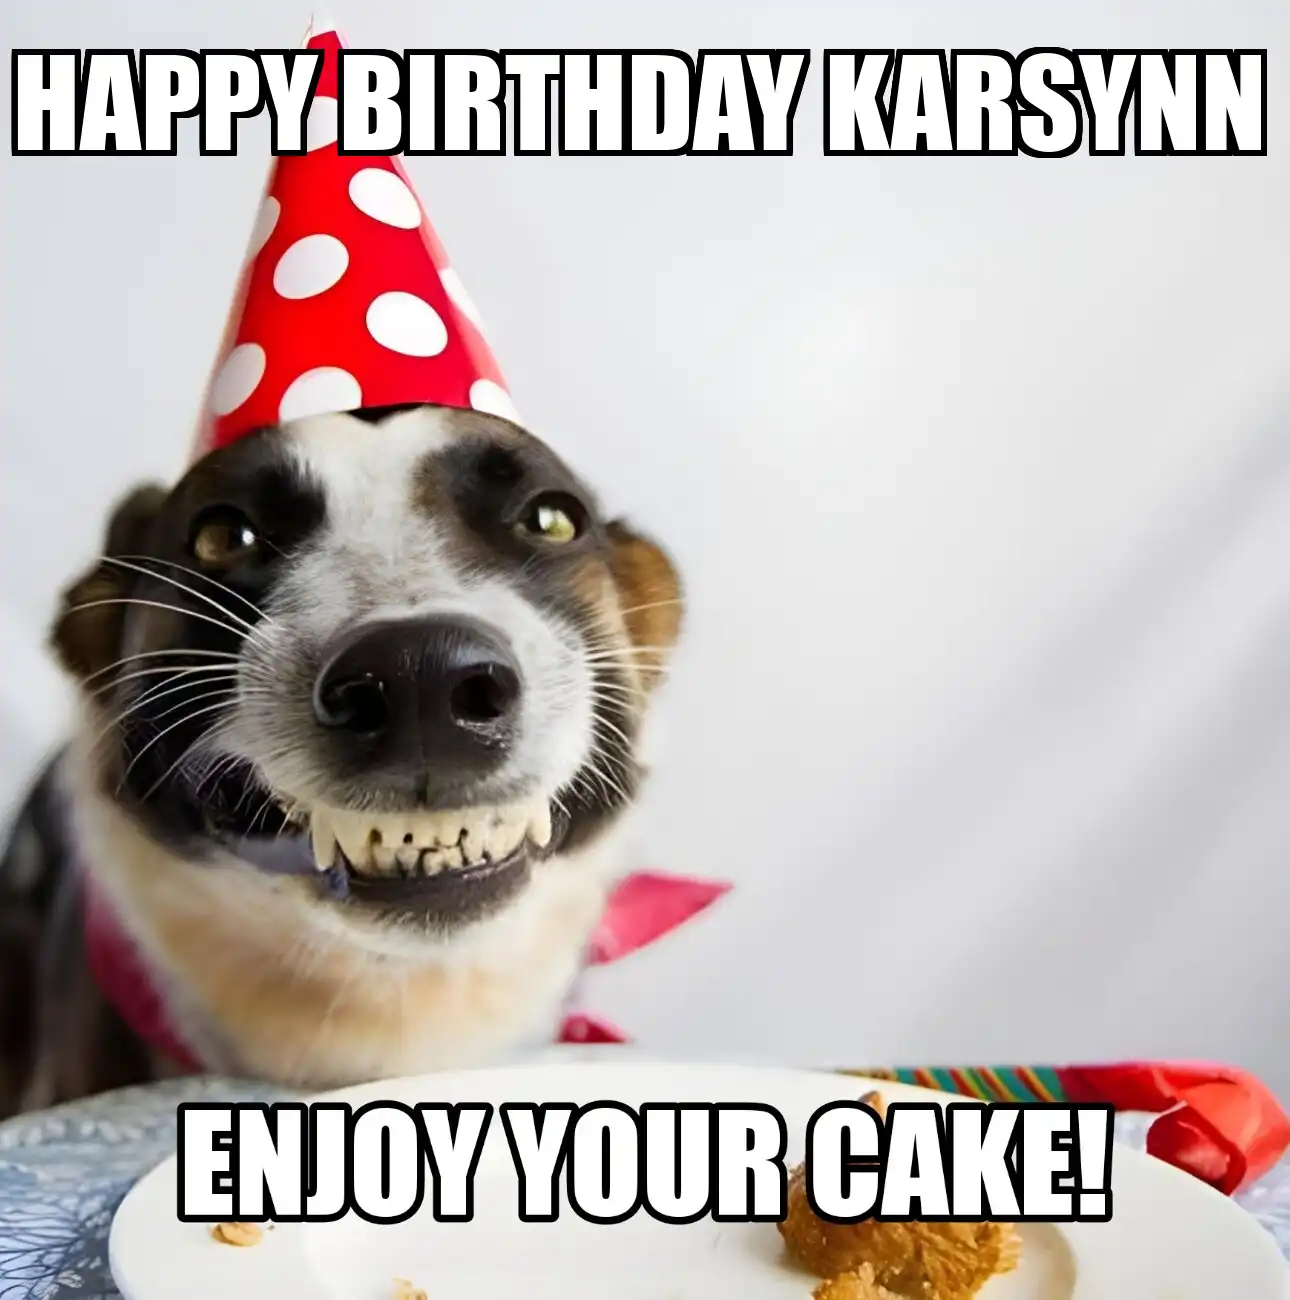 Happy Birthday Karsynn Enjoy Your Cake Dog Meme